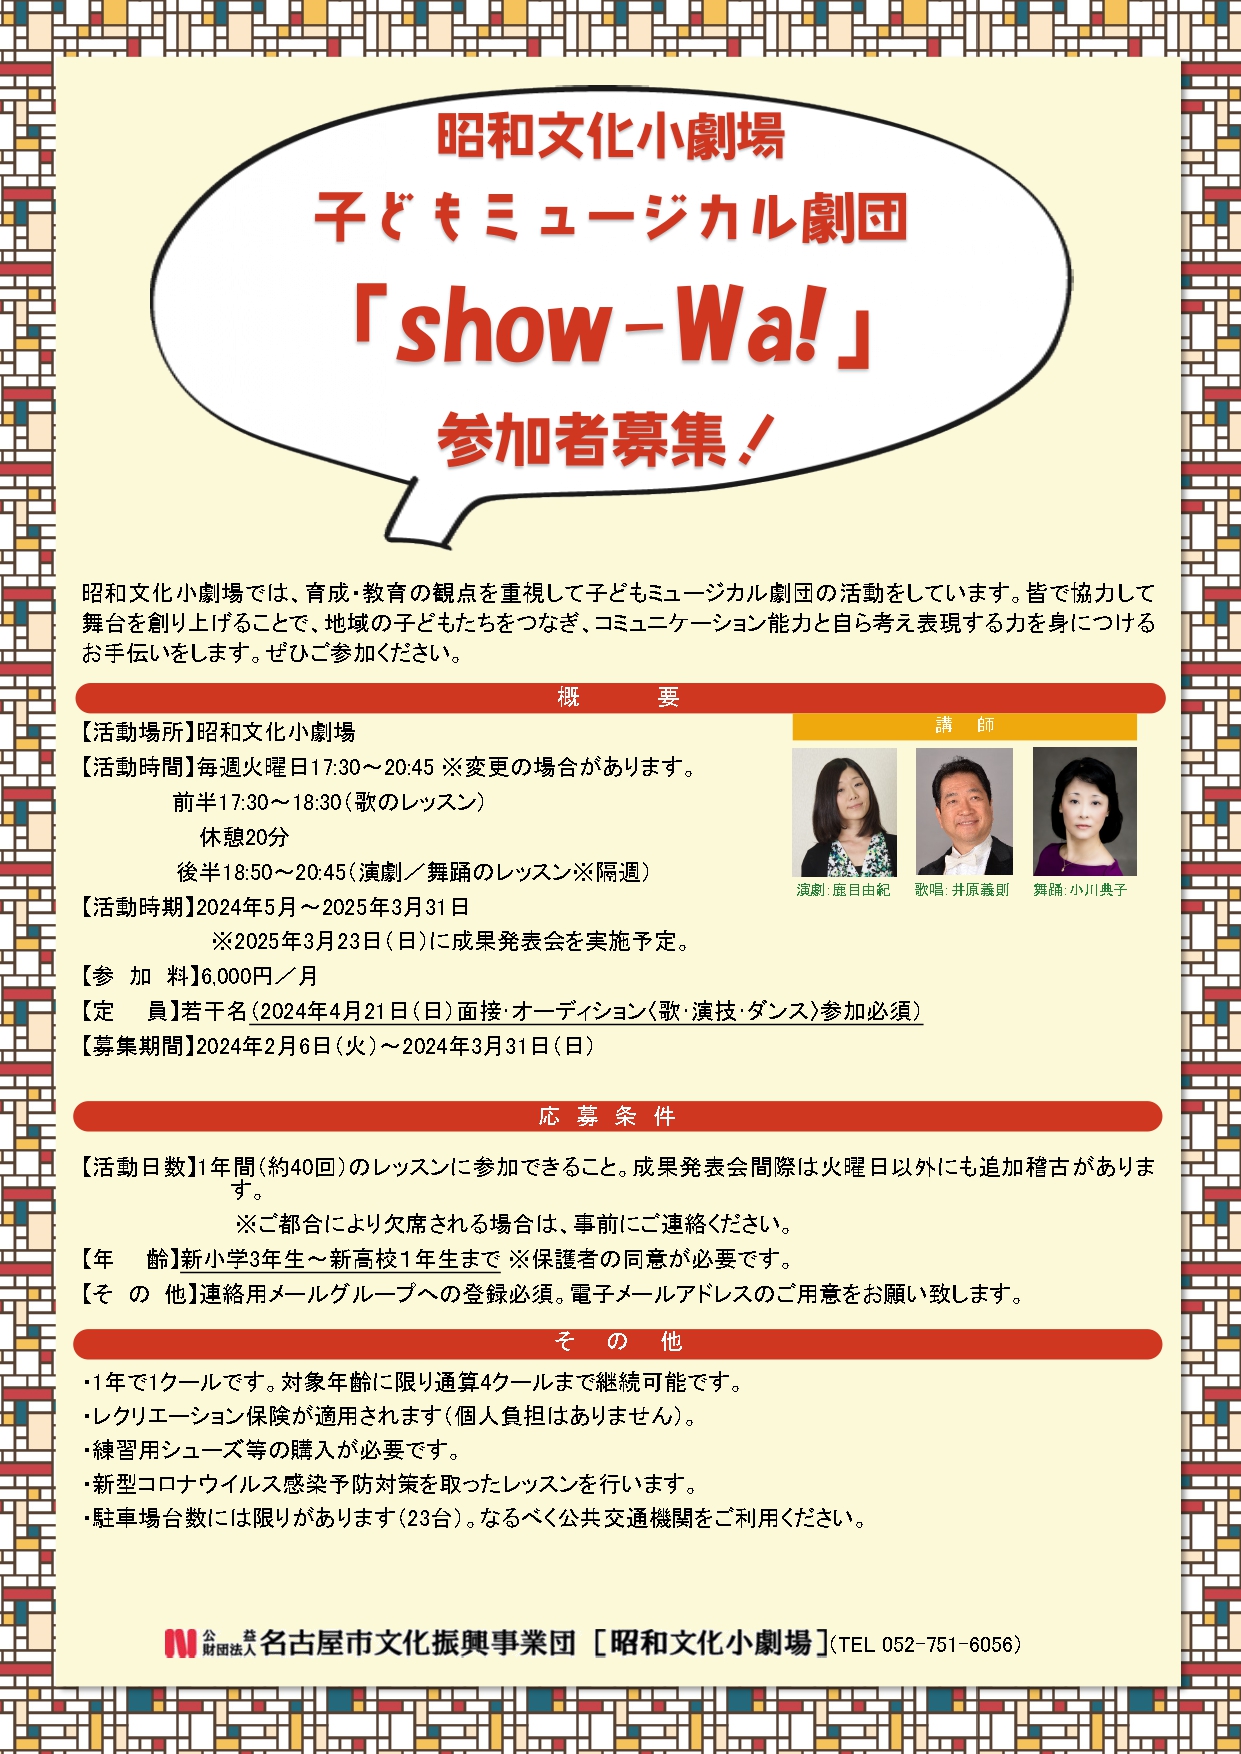 子どもミュージカル劇団「show-Wa!」参加者募集！  のチラシ